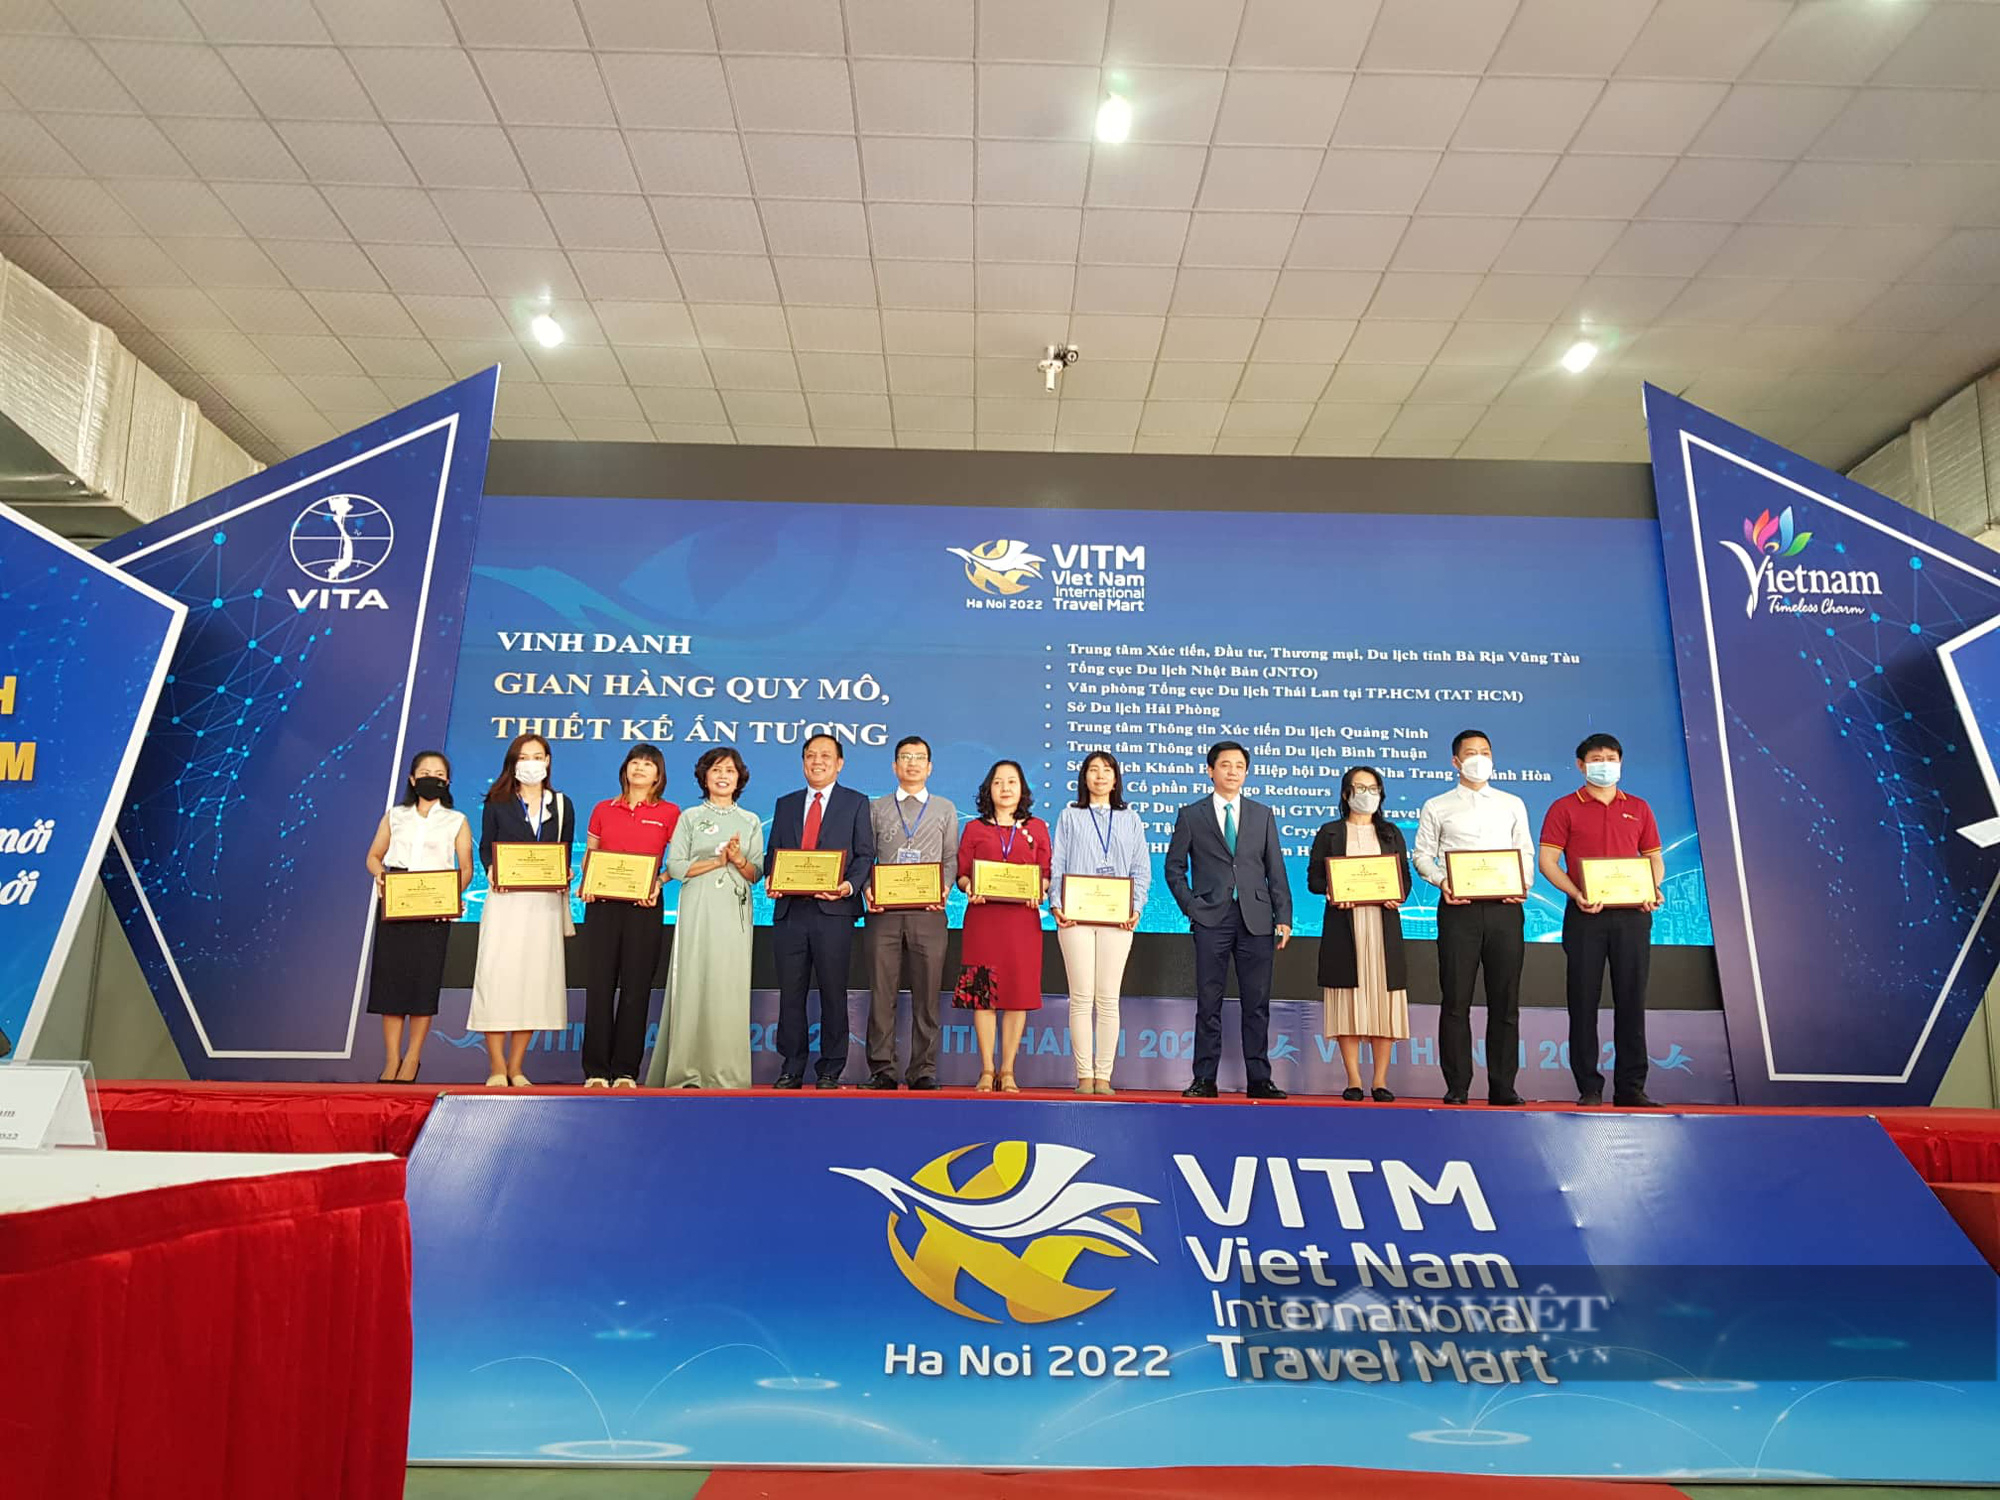 Hội chợ Du lịch quốc tế VITM thu hút hơn 2000 doanh nghiệp và khoảng 40.000 lượt khách tham  - Ảnh 3.